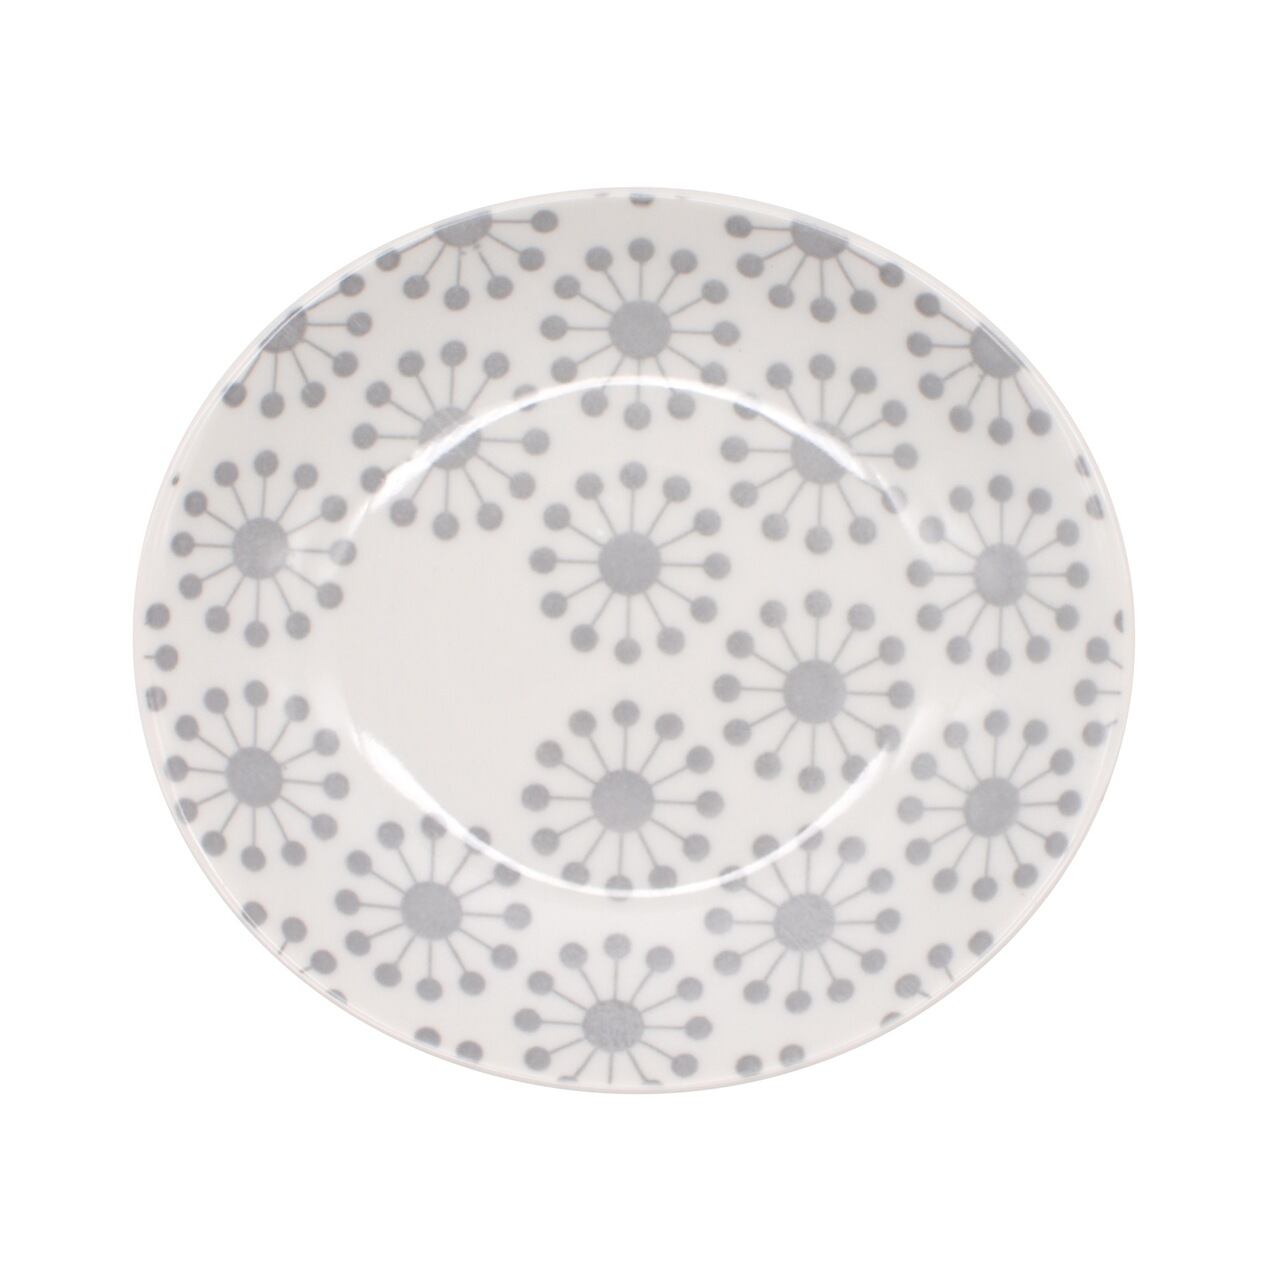 西海陶器 波佐見焼 「 ジオメトリー 」 皿 小皿 プレート 楕円 約12×11cm ハナヅメ 灰色 グレー 13411